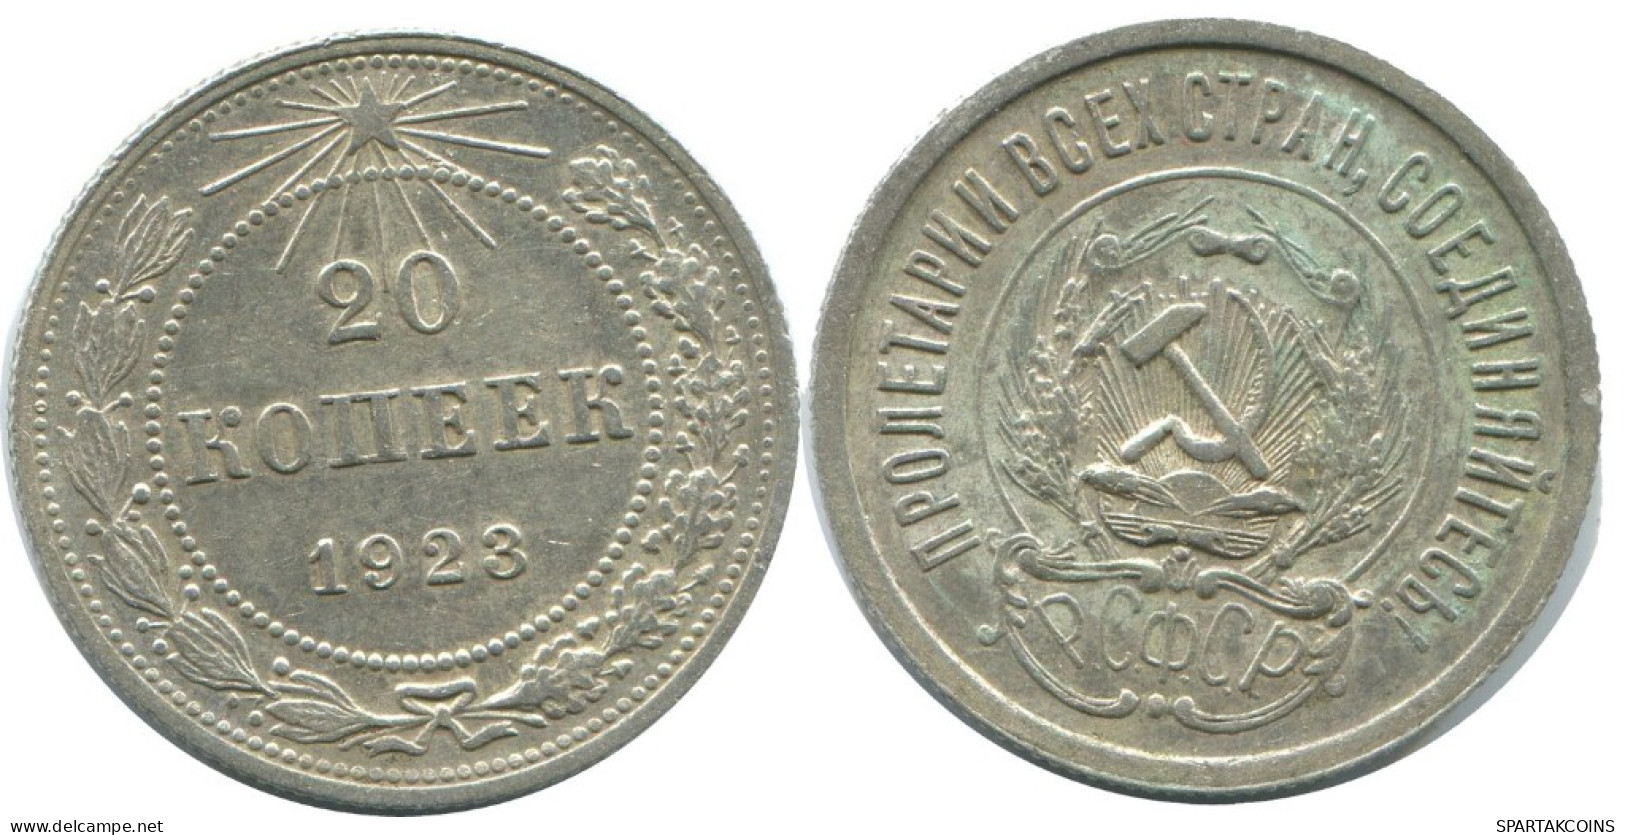 20 KOPEKS 1923 RUSSIA RSFSR SILVER Coin HIGH GRADE #AF690.U.A - Rusland